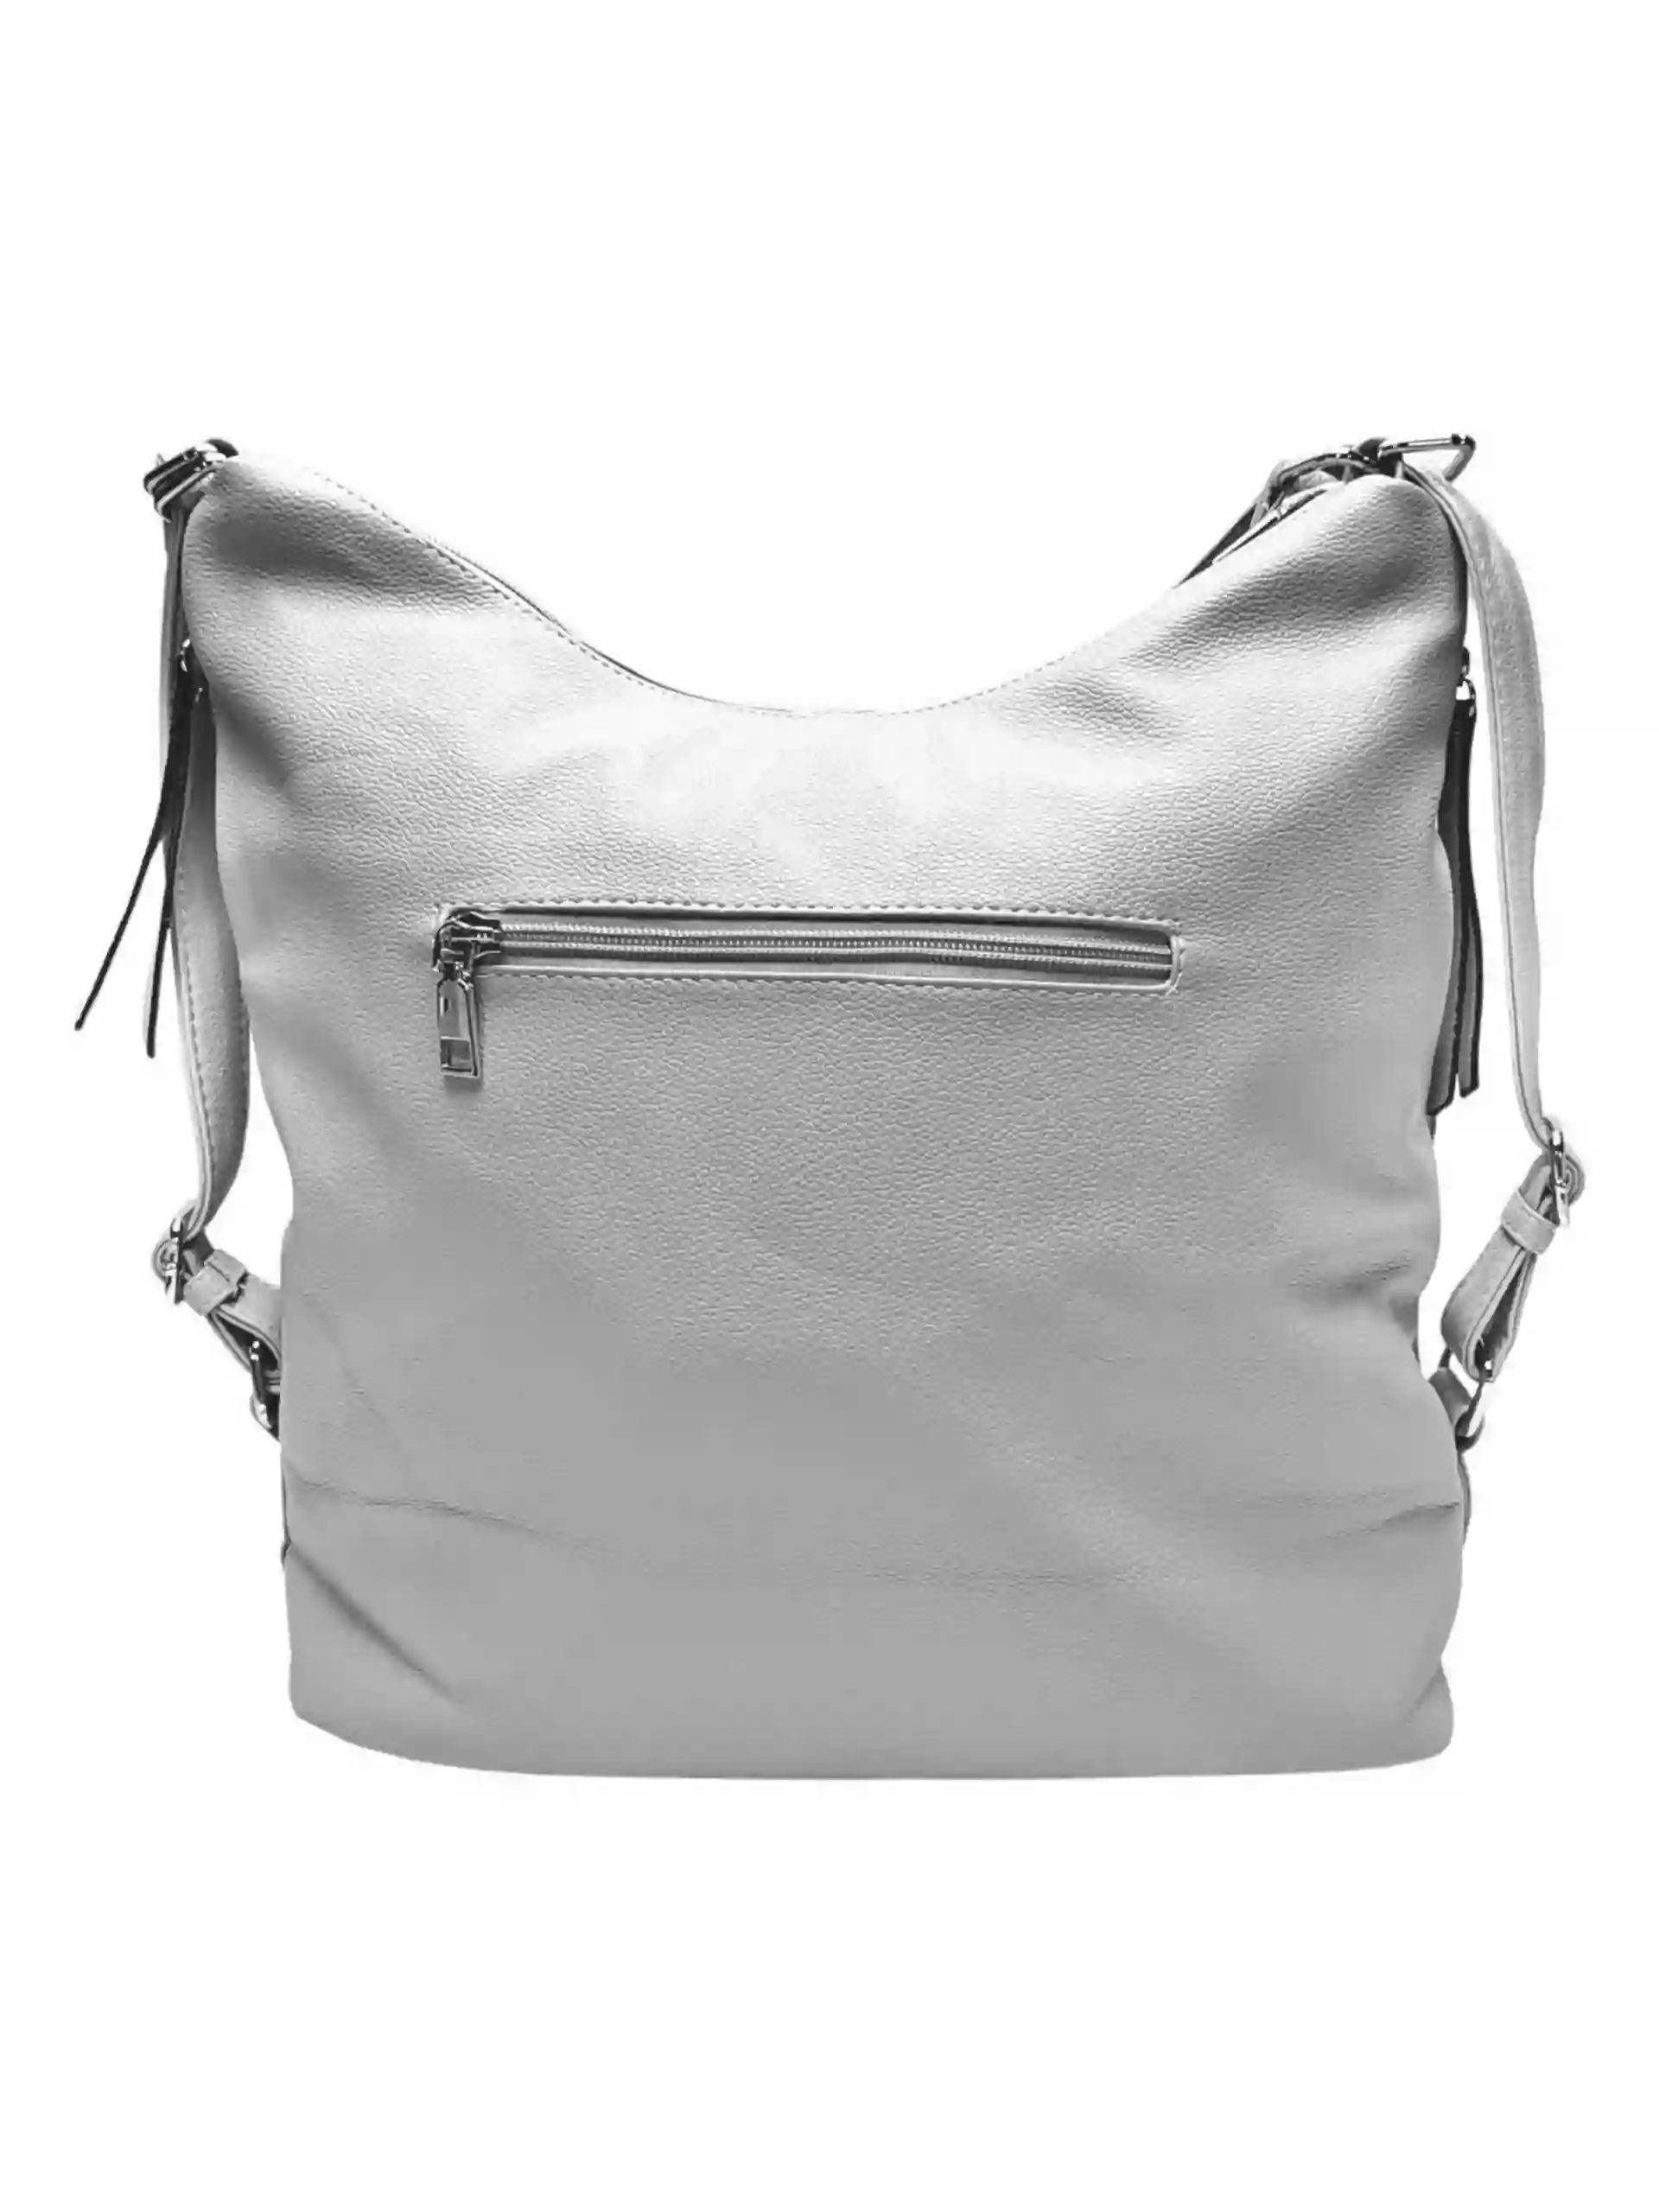 Velký světle šedý kabelko-batoh s bočními kapsami, Tapple, 9314-3, zadní strana kabelko-batohu